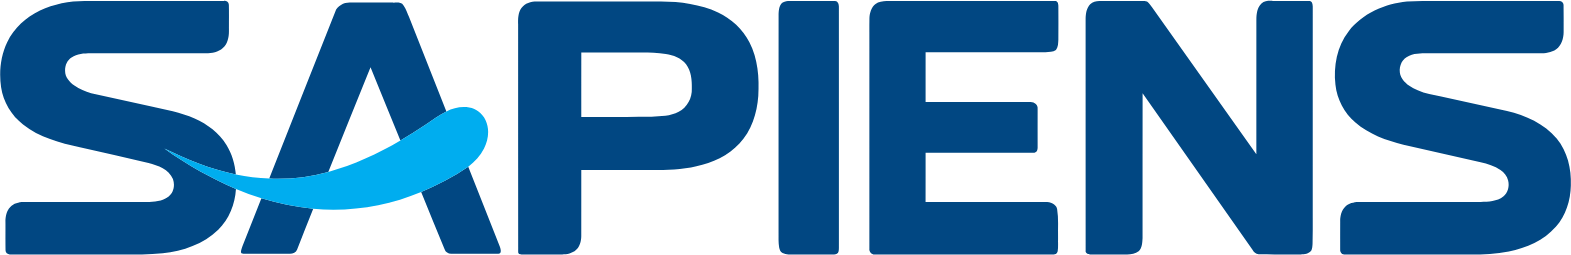 Sapiens logo large (transparent PNG)